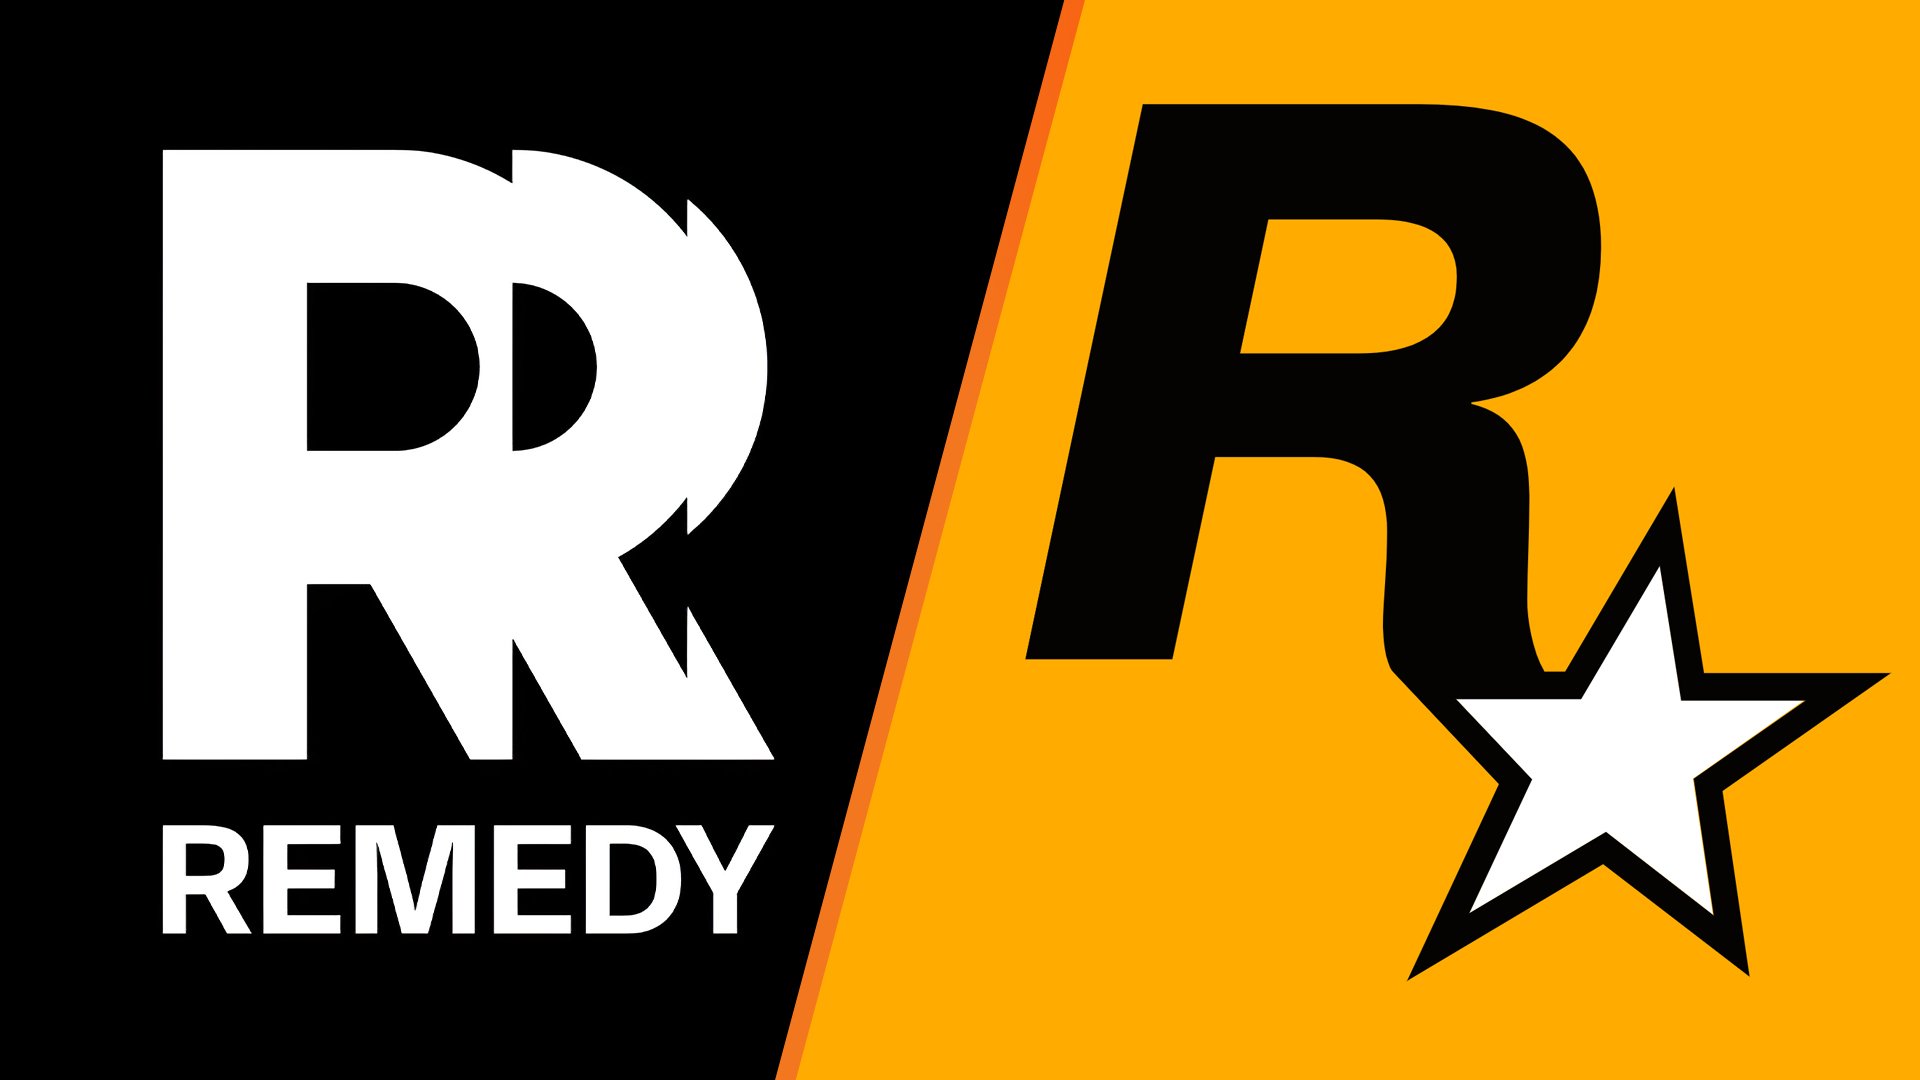 Take-Two, Remedy'nin Rockstar'a benzeyen yeni logosu nedeniyle ticari marka anlaşmazlığı yaptı